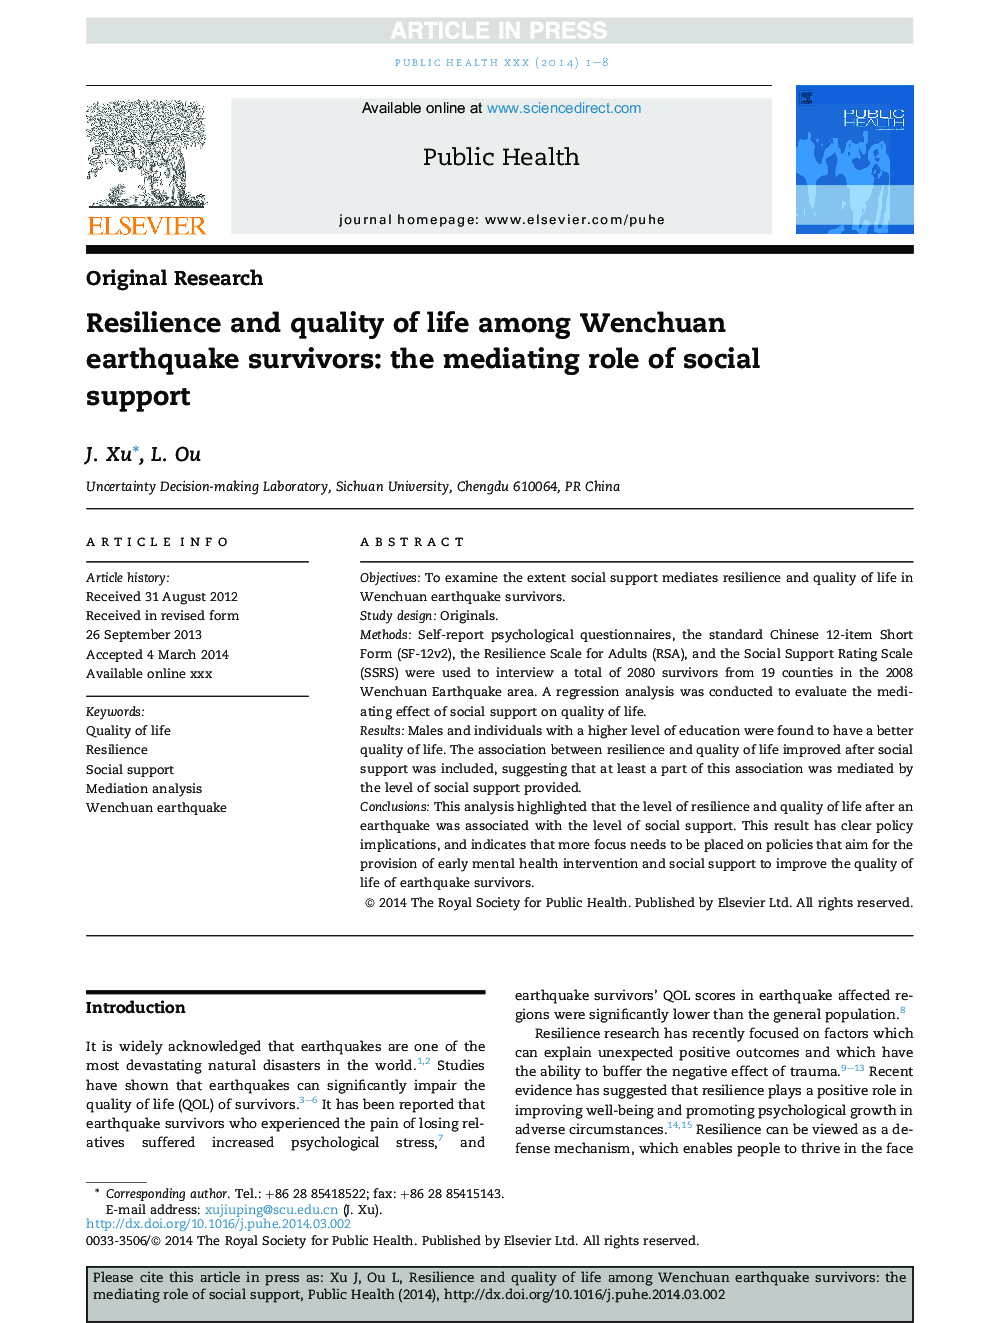 انعطاف پذیری و کیفیت زندگی در بین بازماندگان زلزله ونچوان: نقش میانجی از حمایت اجتماعی 